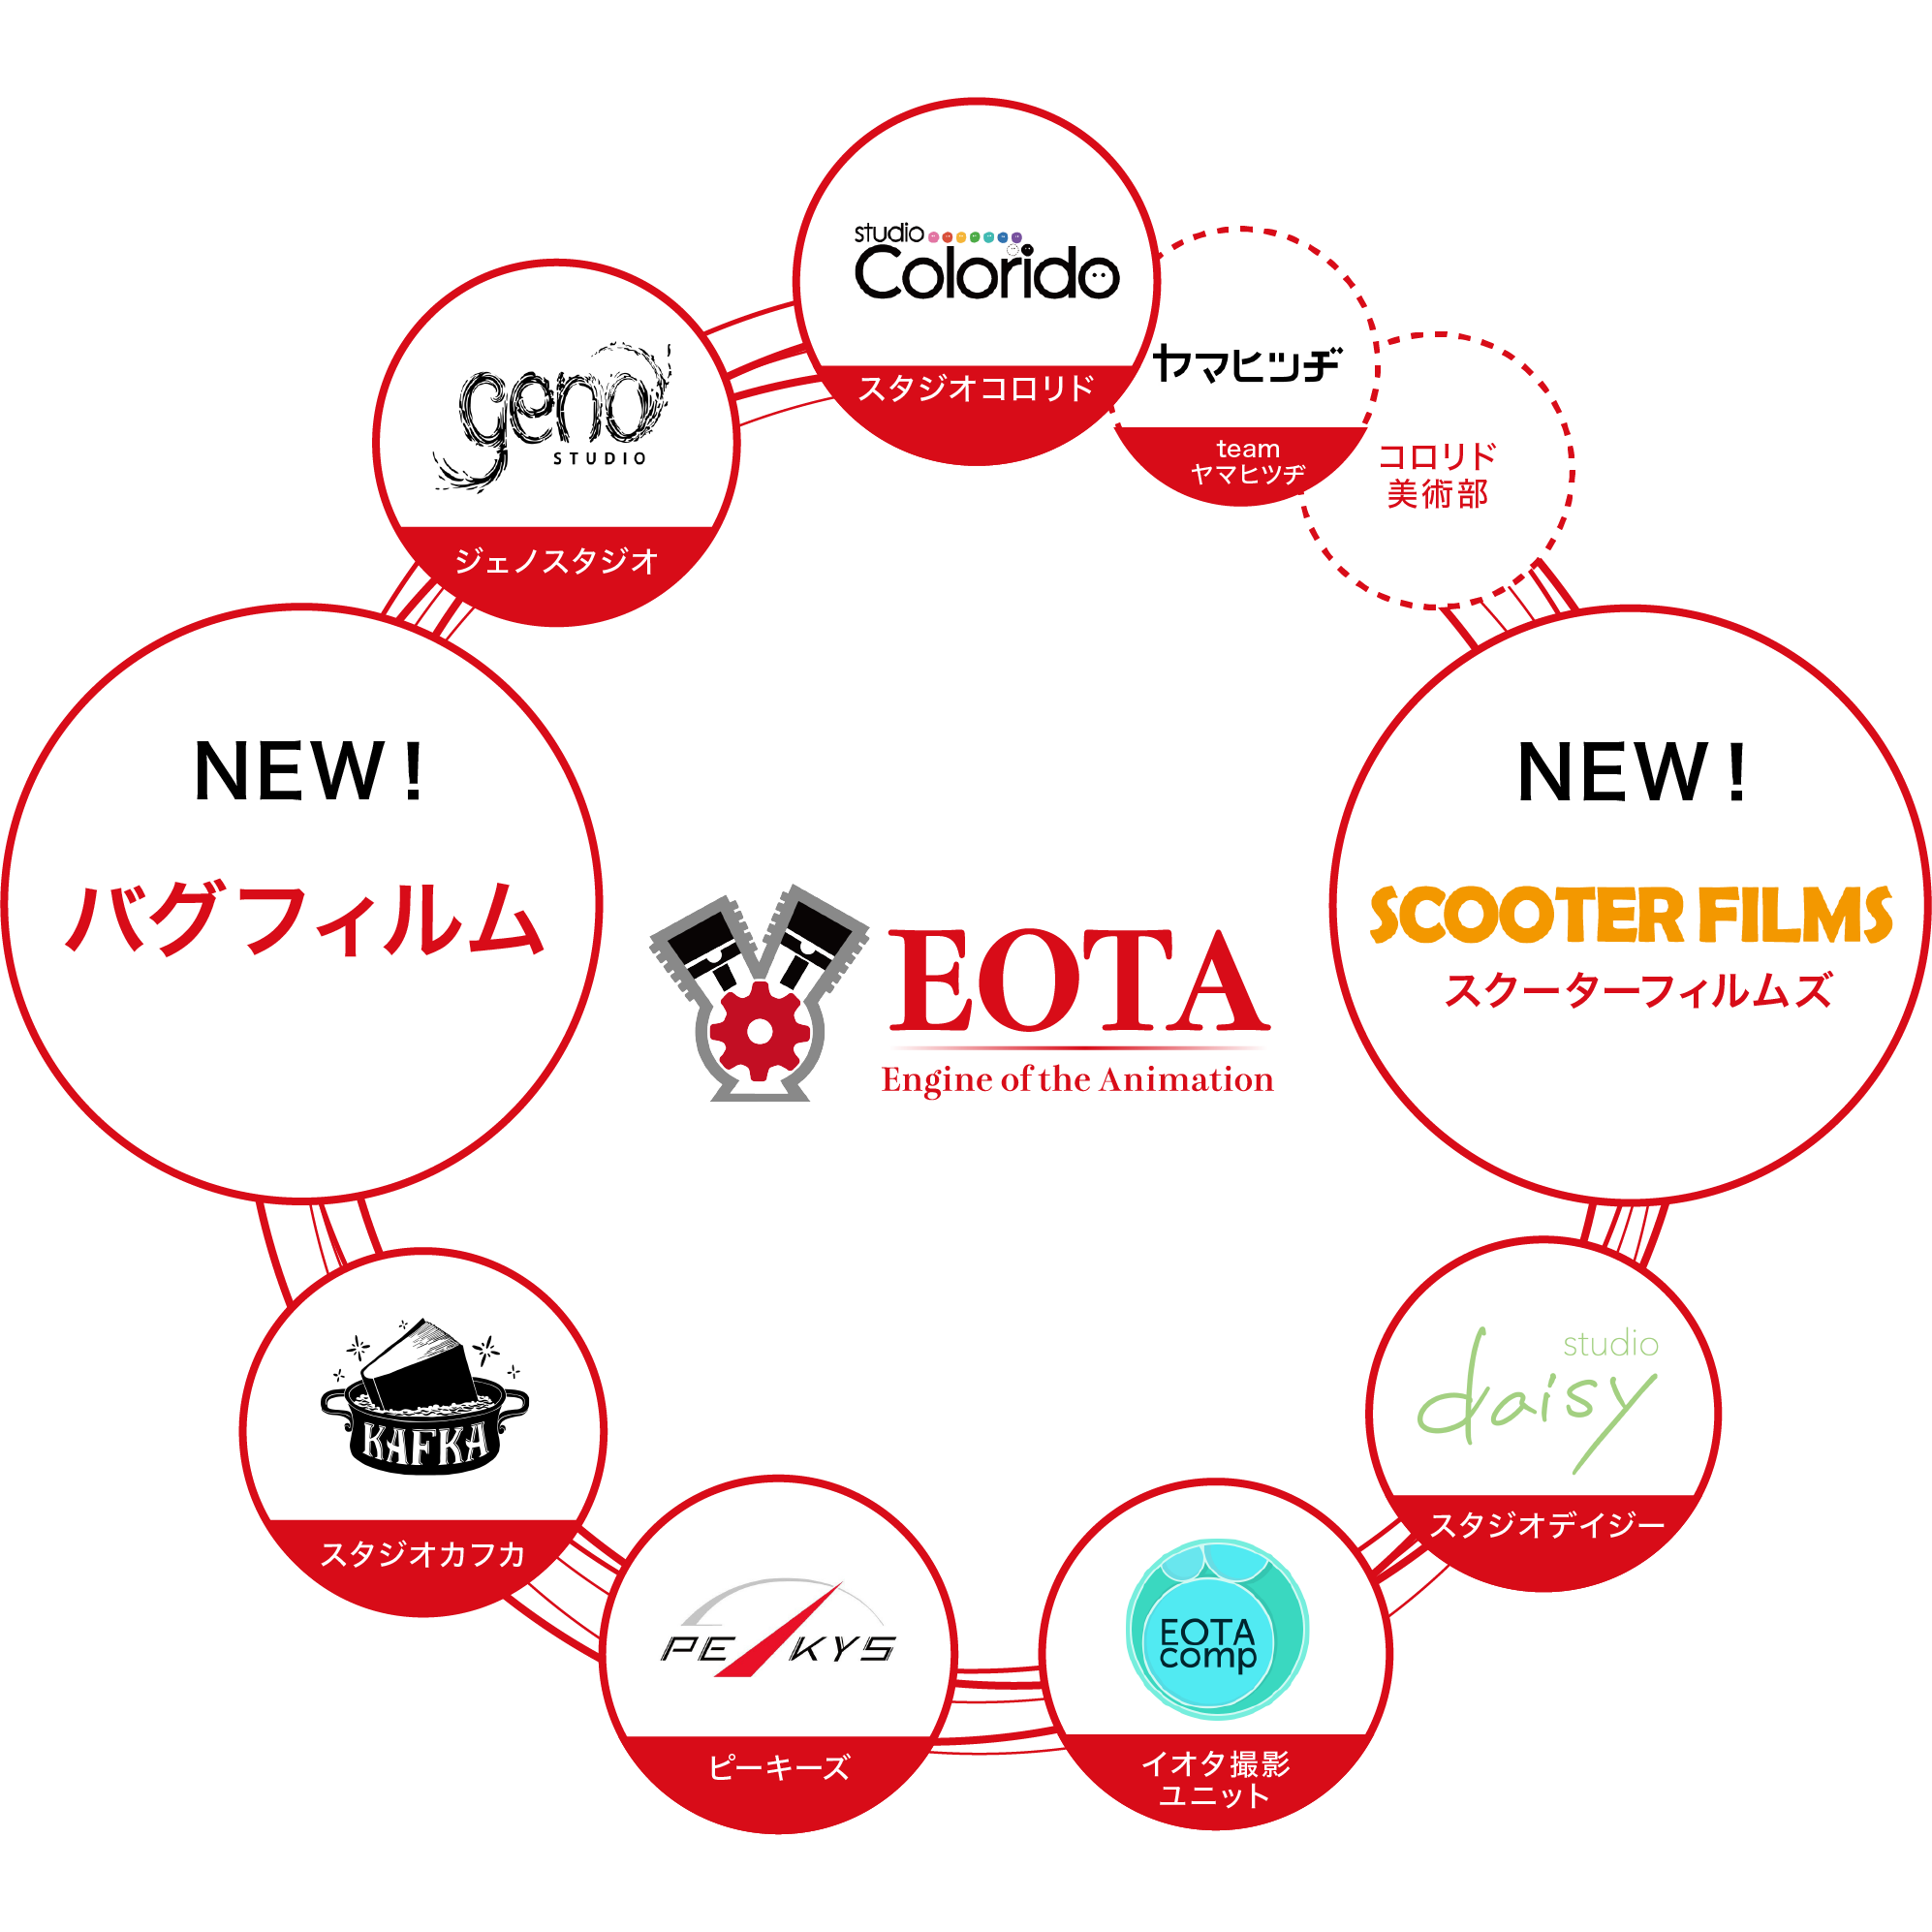 ツインエンジングループが新たなアニメーションスタジオ「バグフィルム」「スクーターフィルムズ」の2社を設立！世界が熱狂するフィルム作りを目指し制作体制強化のサブ画像1_ツインエンジングループの制作を担う「EOTA(イオタ)」の組織図。計8つのスタジオと2つのクリエイティブユニットで構成されている。